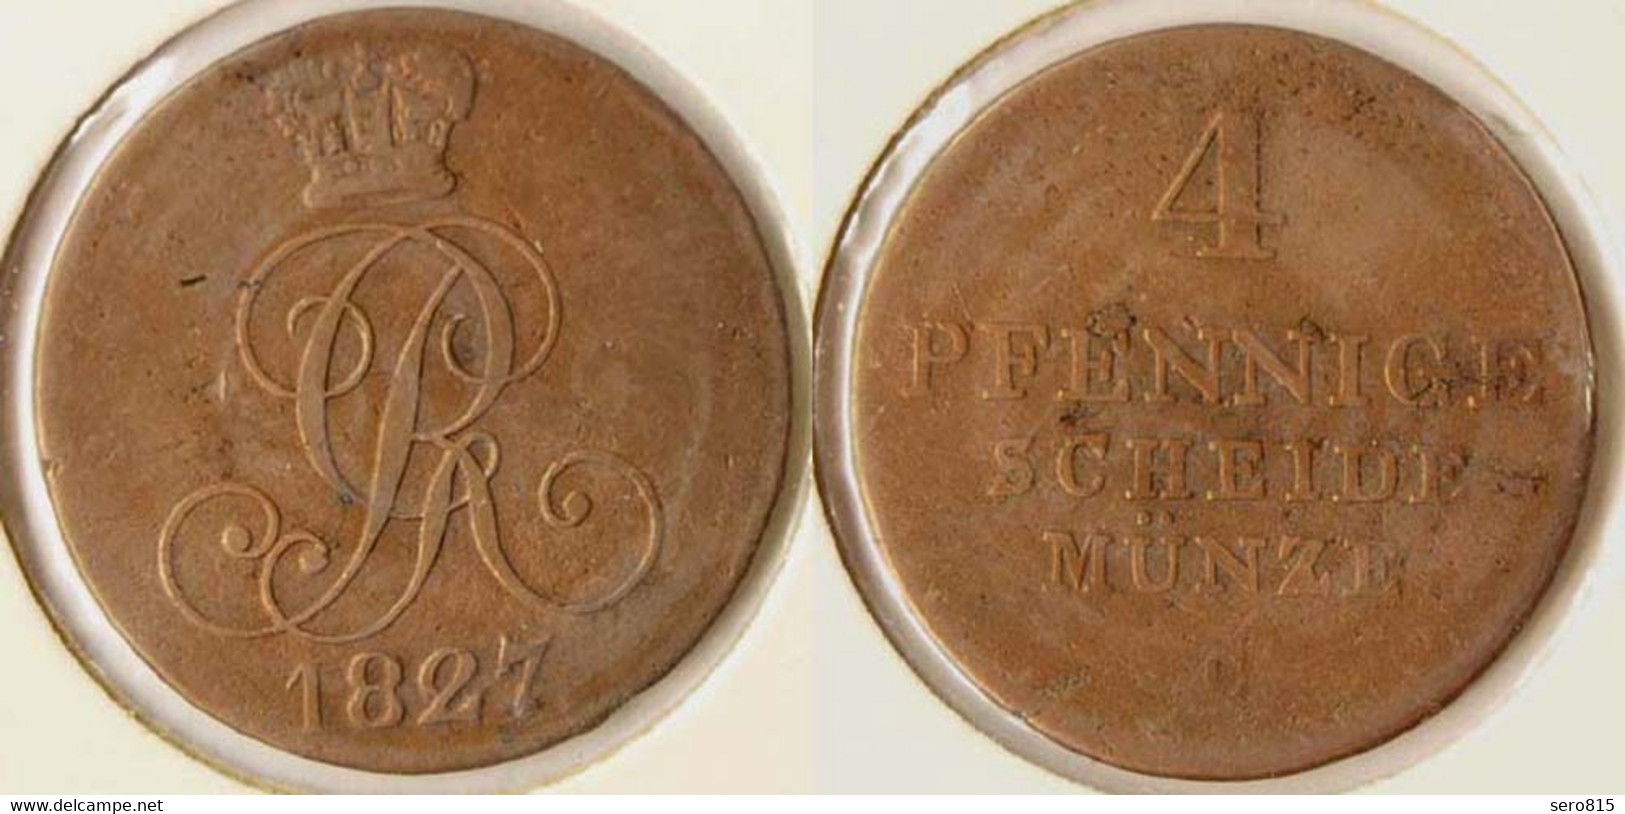 Braunschweig-Calenberg-Hannover 4 Pfennig 1827 Altdeutschland (n474 - Small Coins & Other Subdivisions